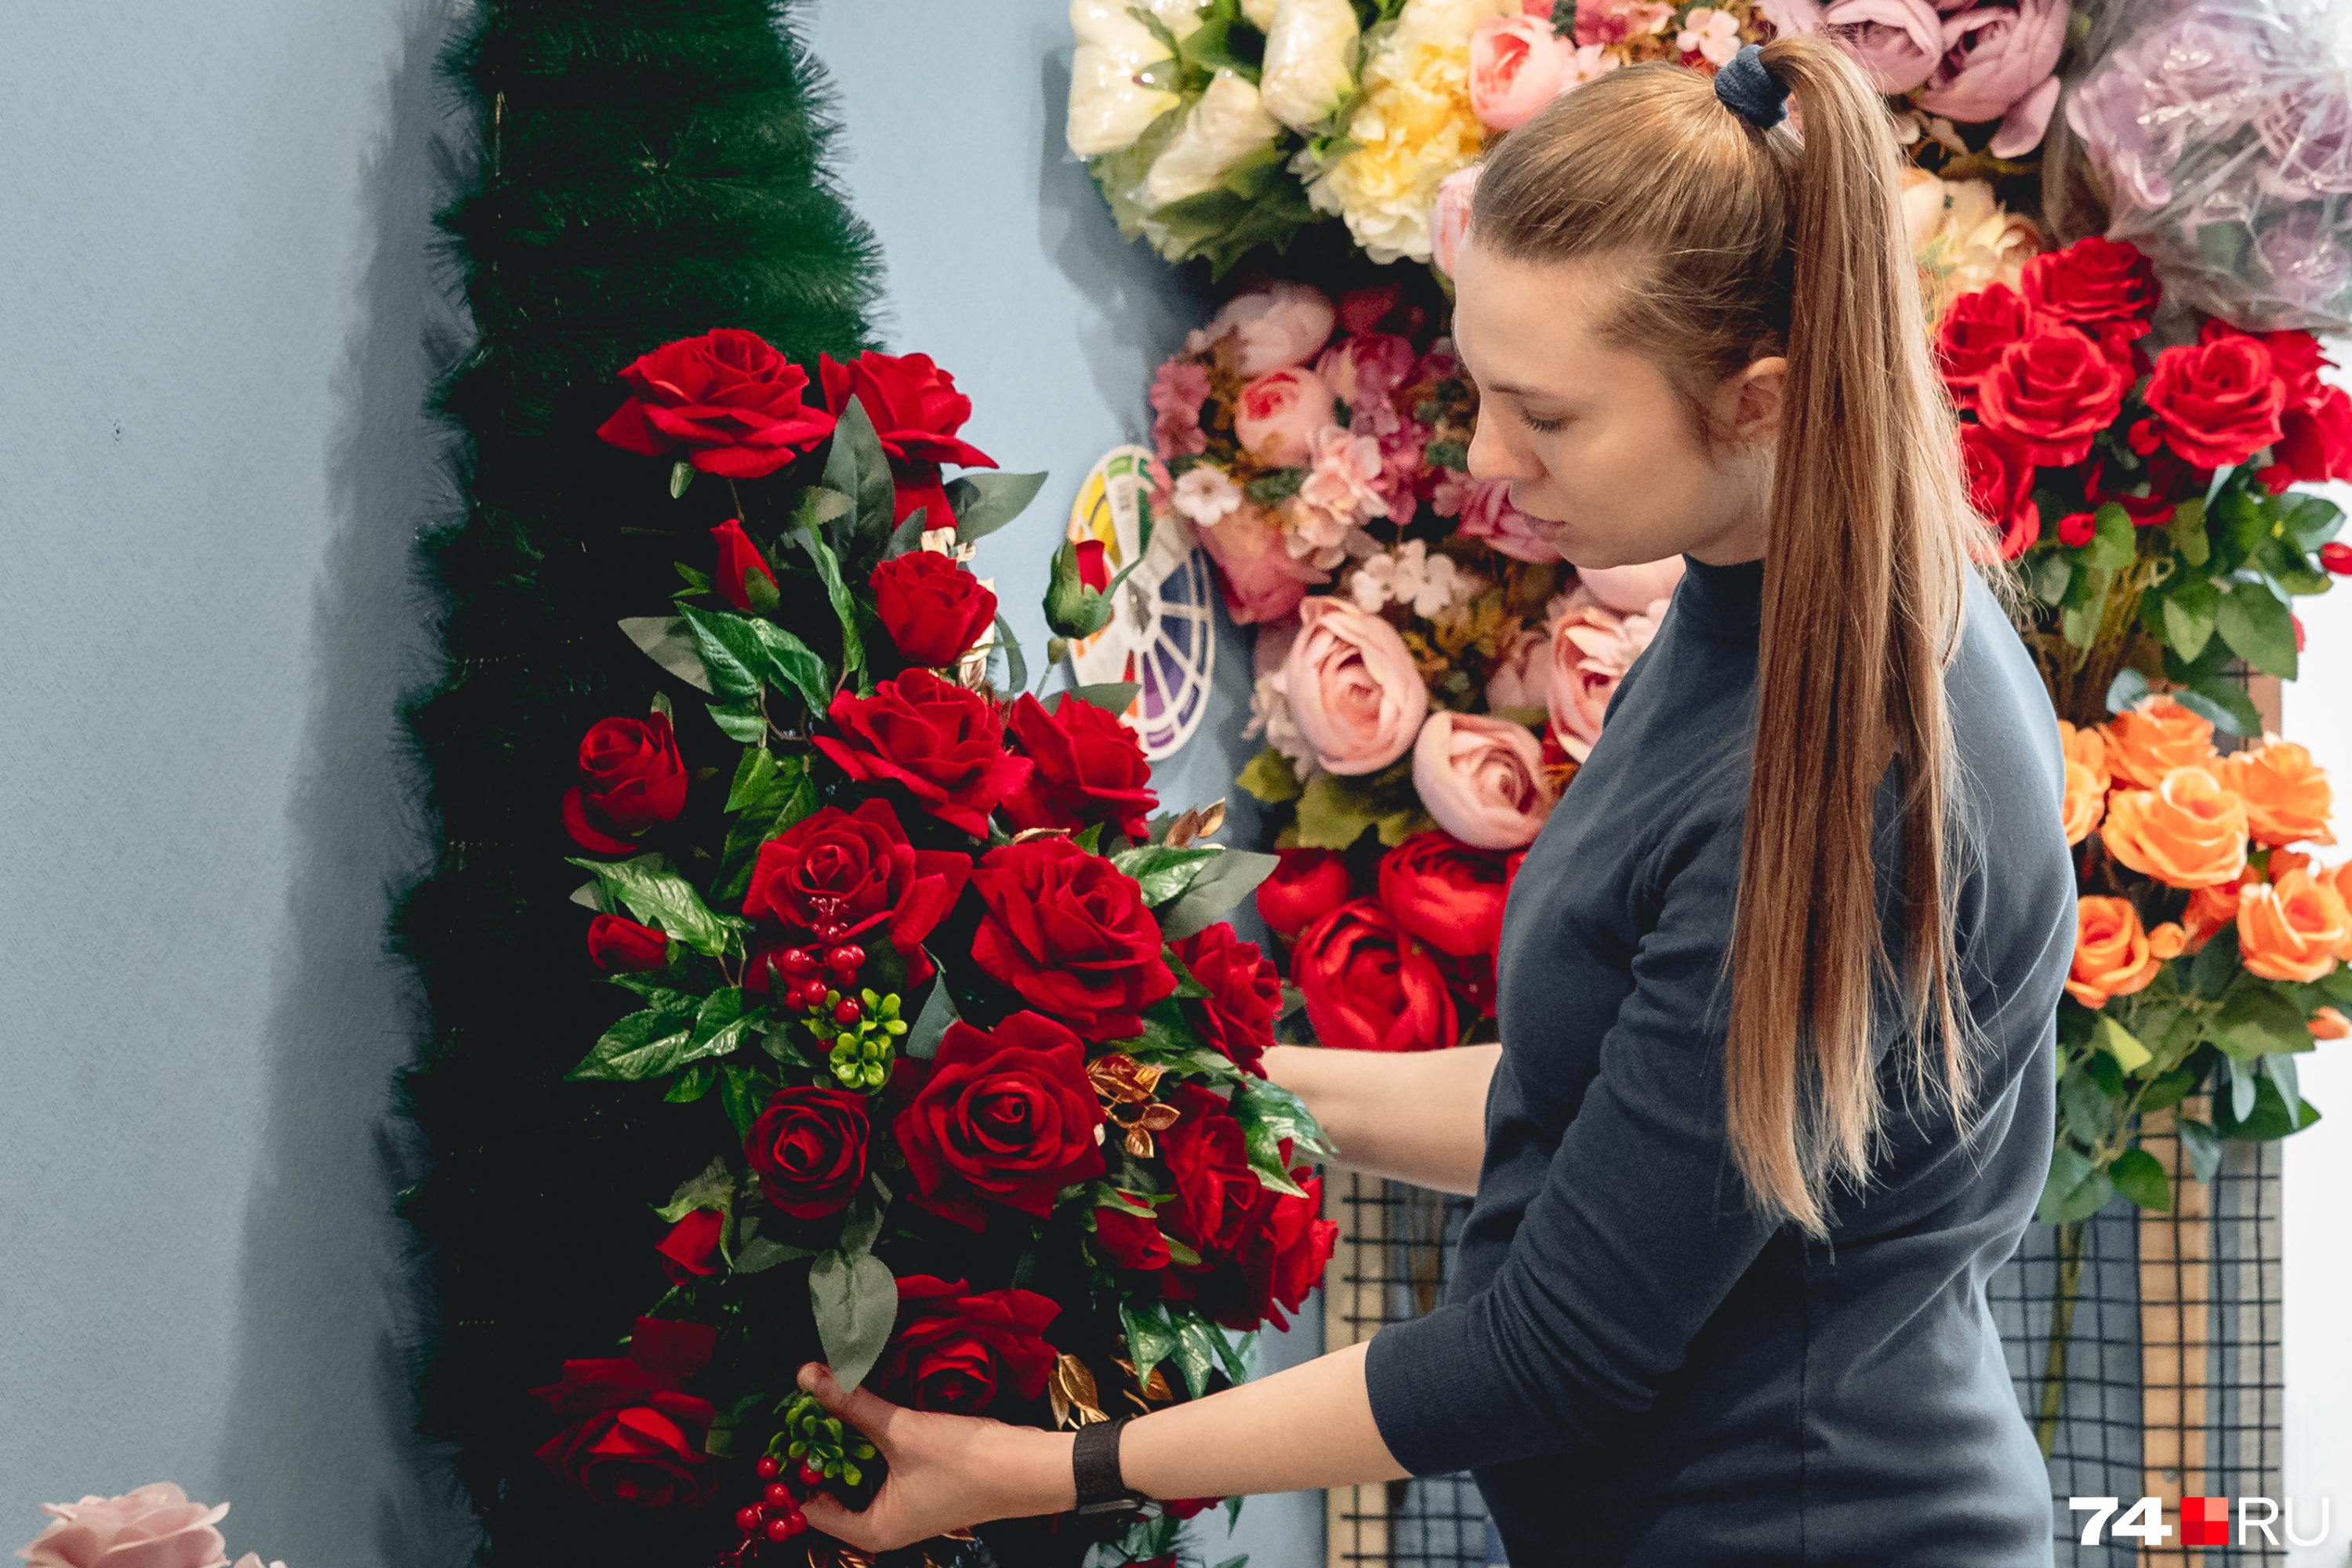 Венки ритуальные на похороны - купить в СПб